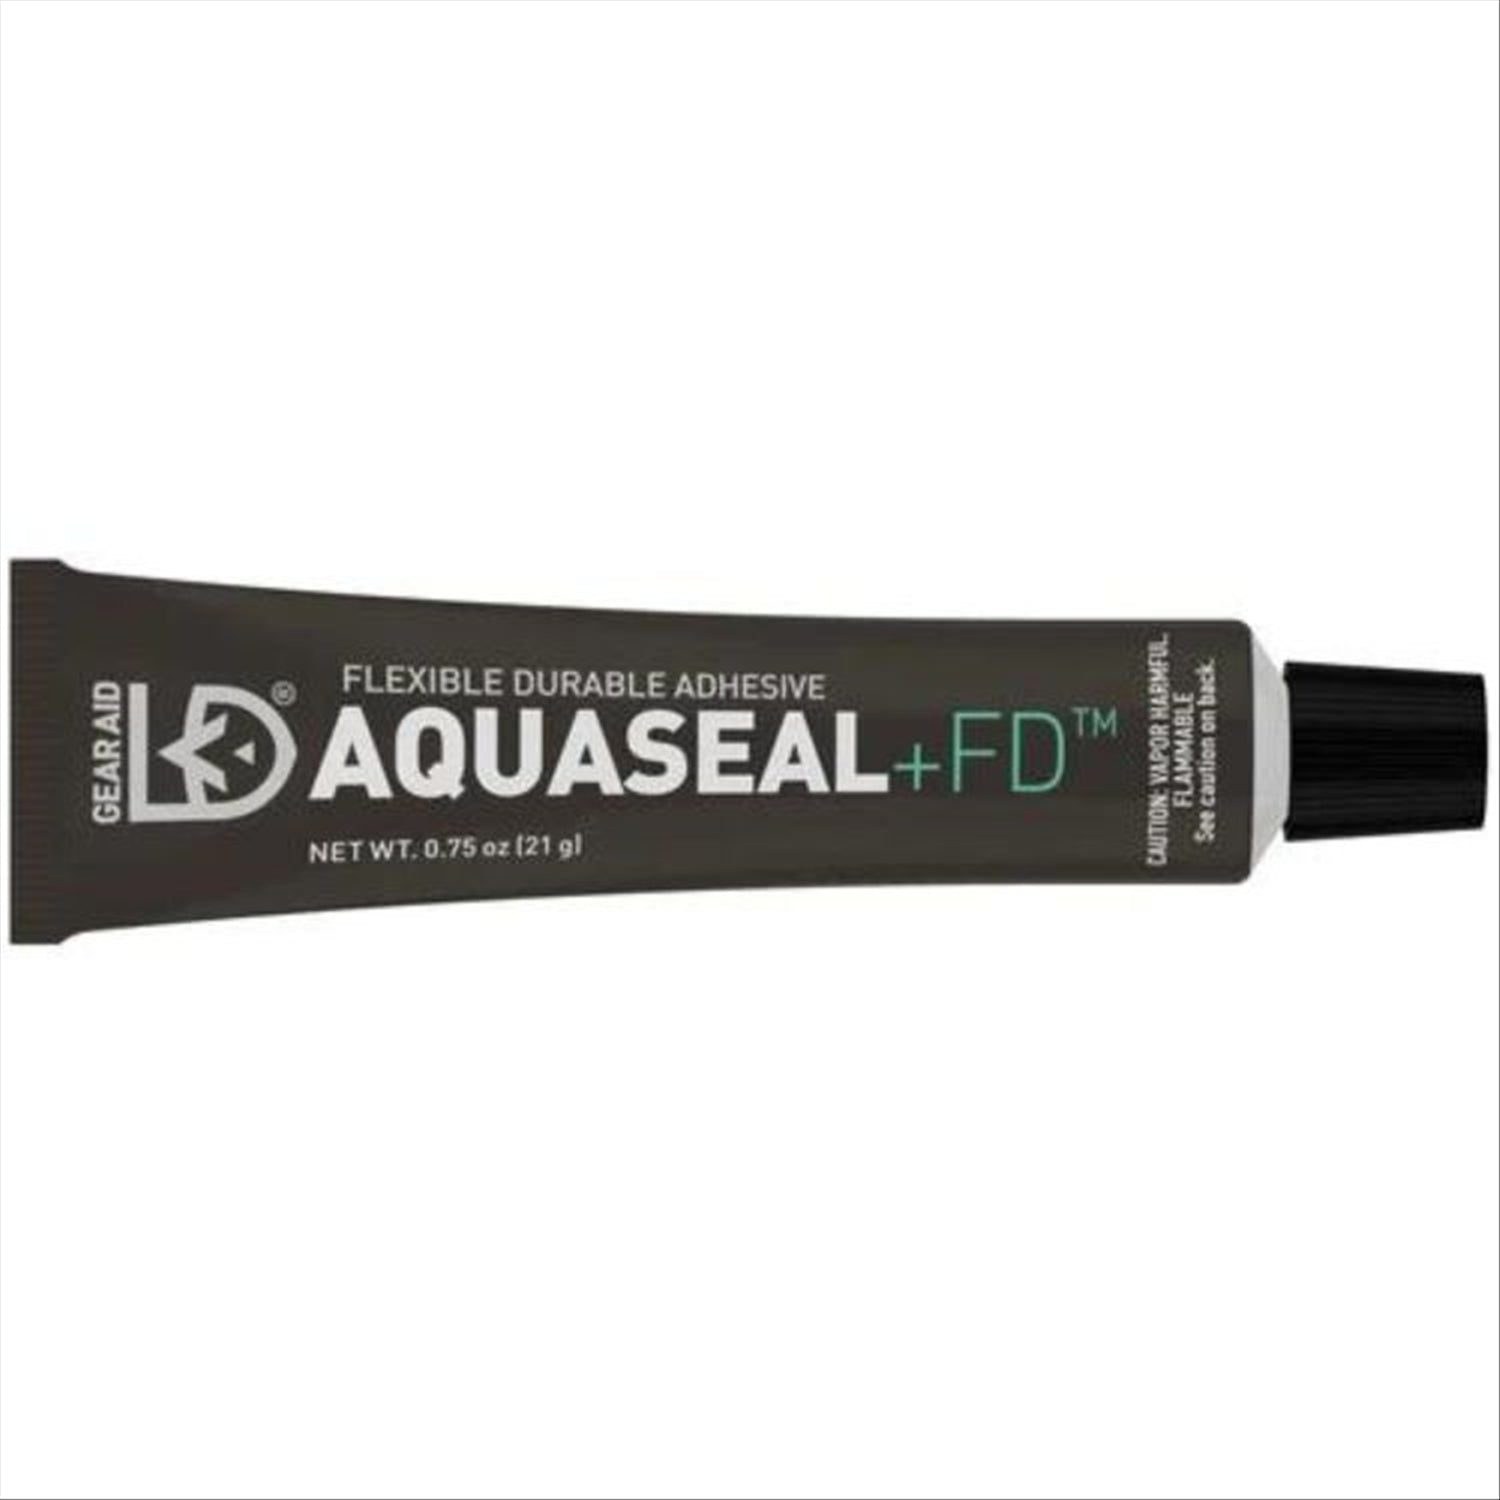 Gear Aid Gear Aid Aquaseal + FD Repair Adhesive